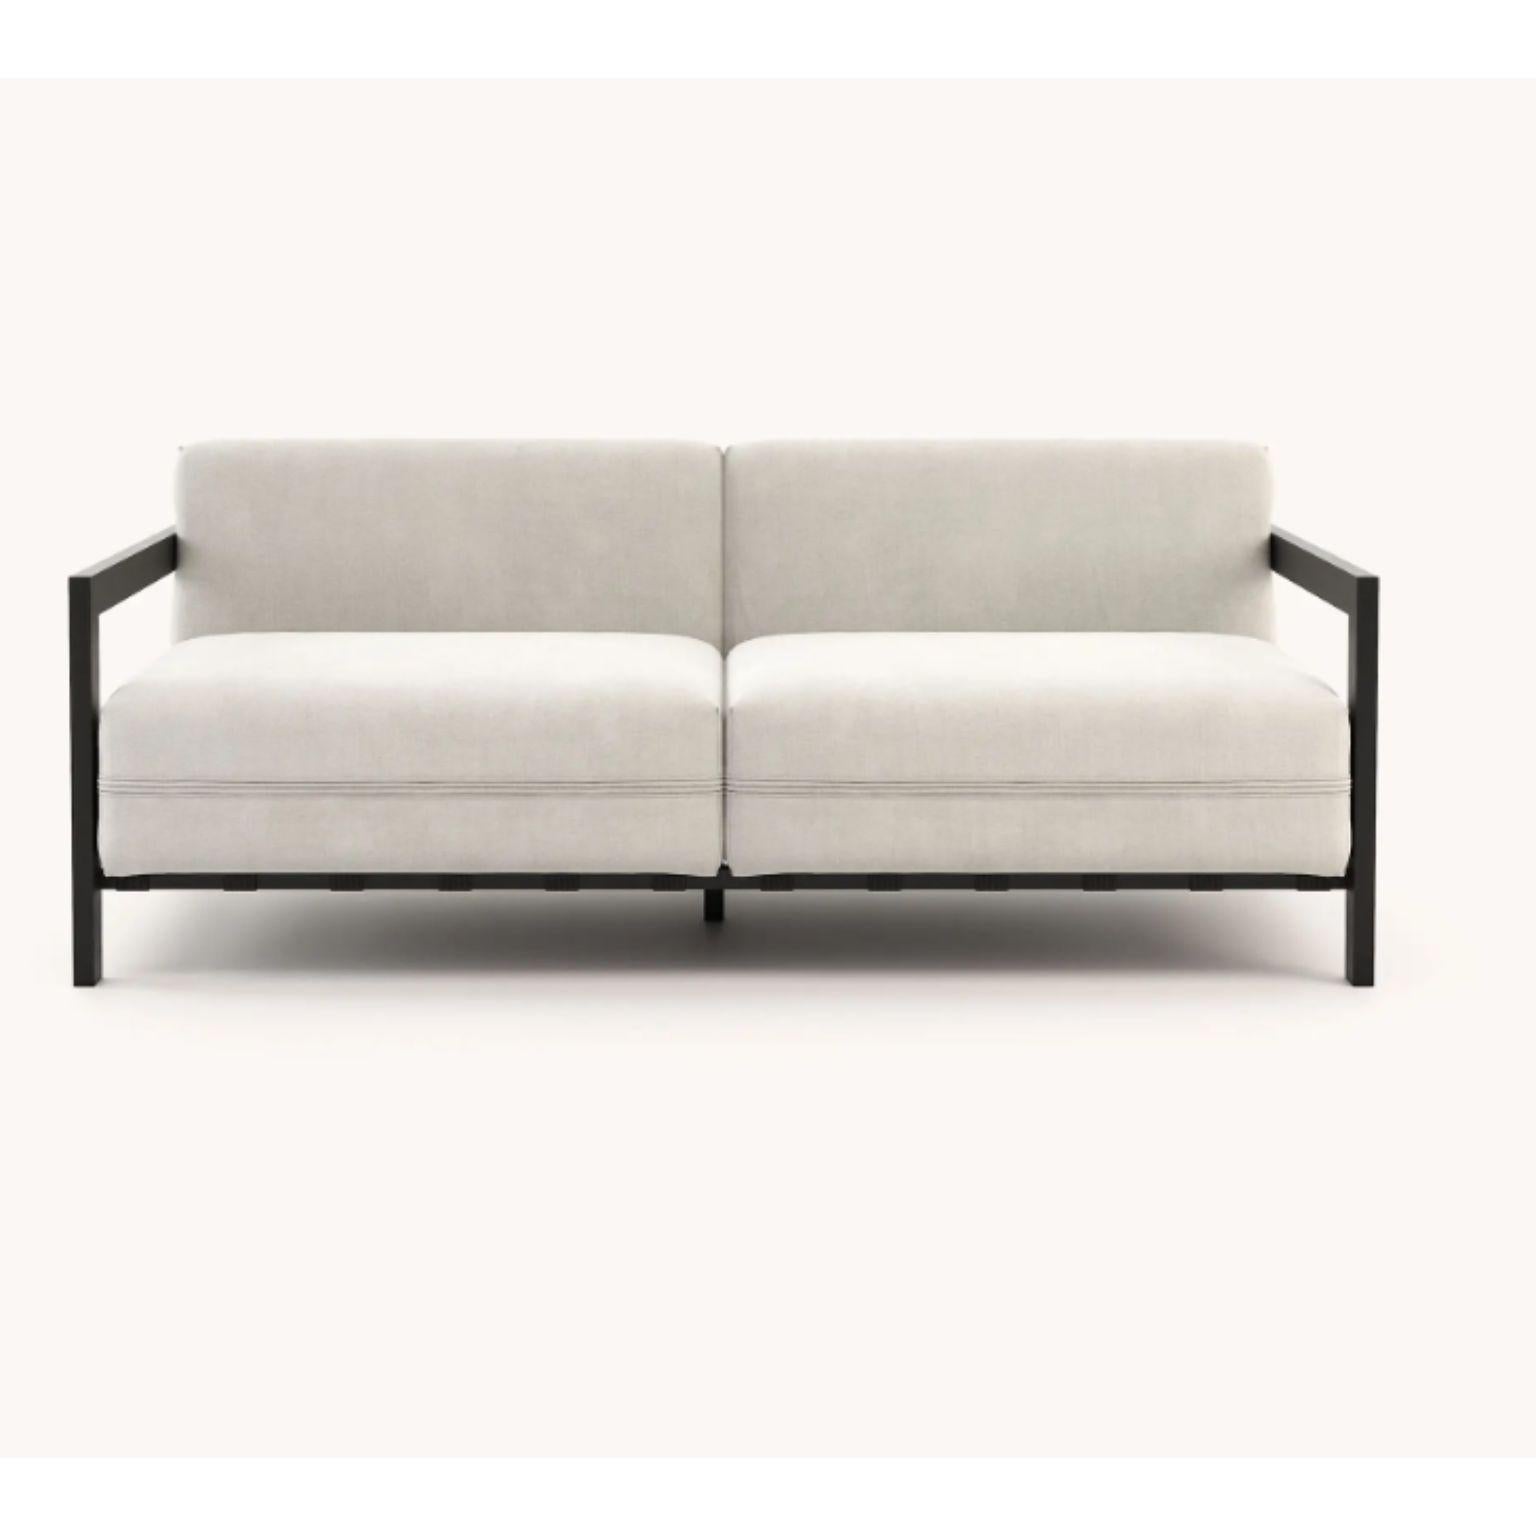 Post-Modern Bondi 2 Seats Sofa by Domkapa For Sale